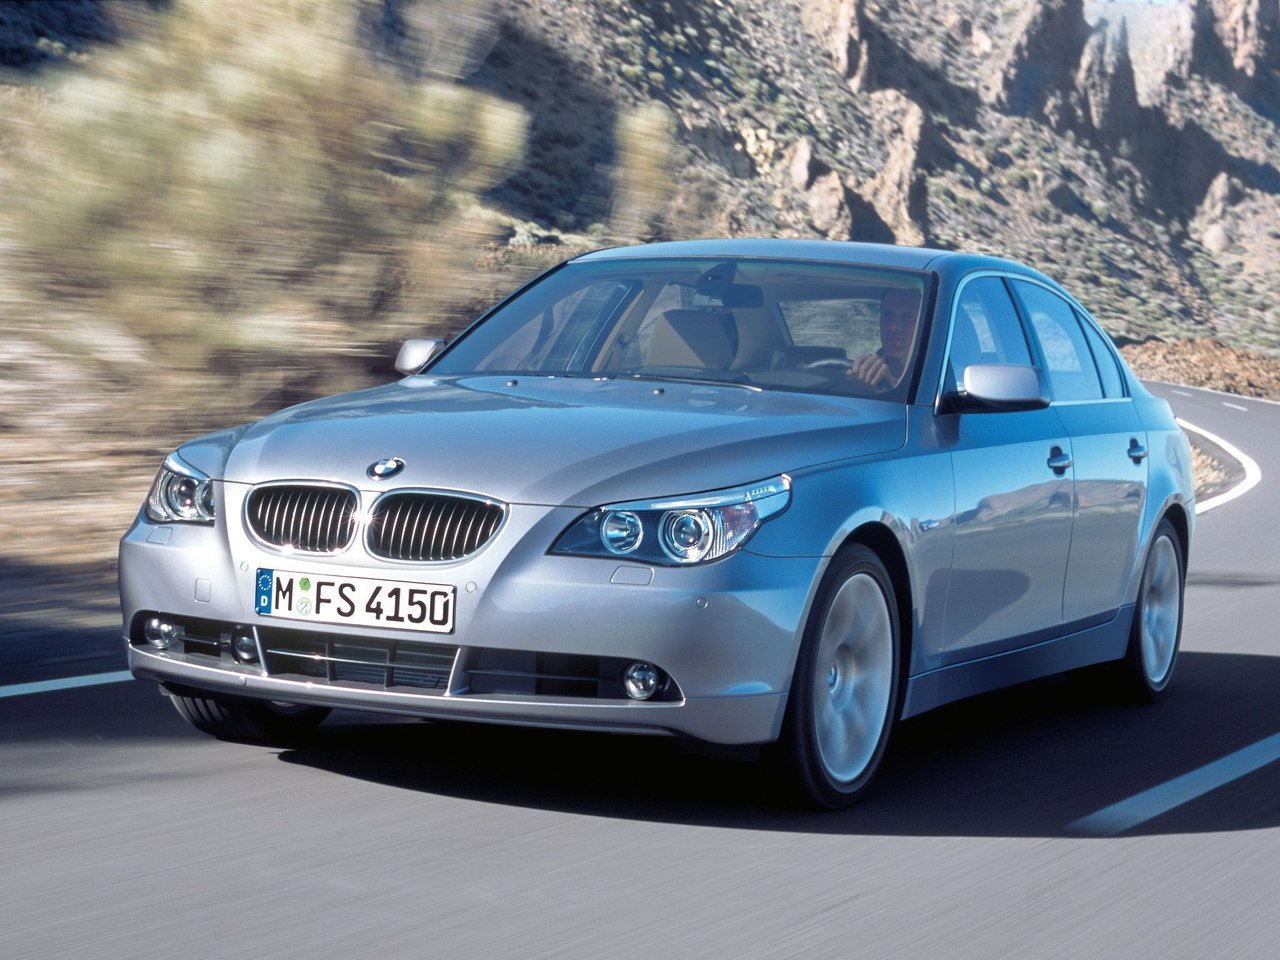 Расход газа тринадцати комплектаций седана BMW 5 серия. Разница стоимости заправки газом и бензином. Автономный пробег до и после установки ГБО.